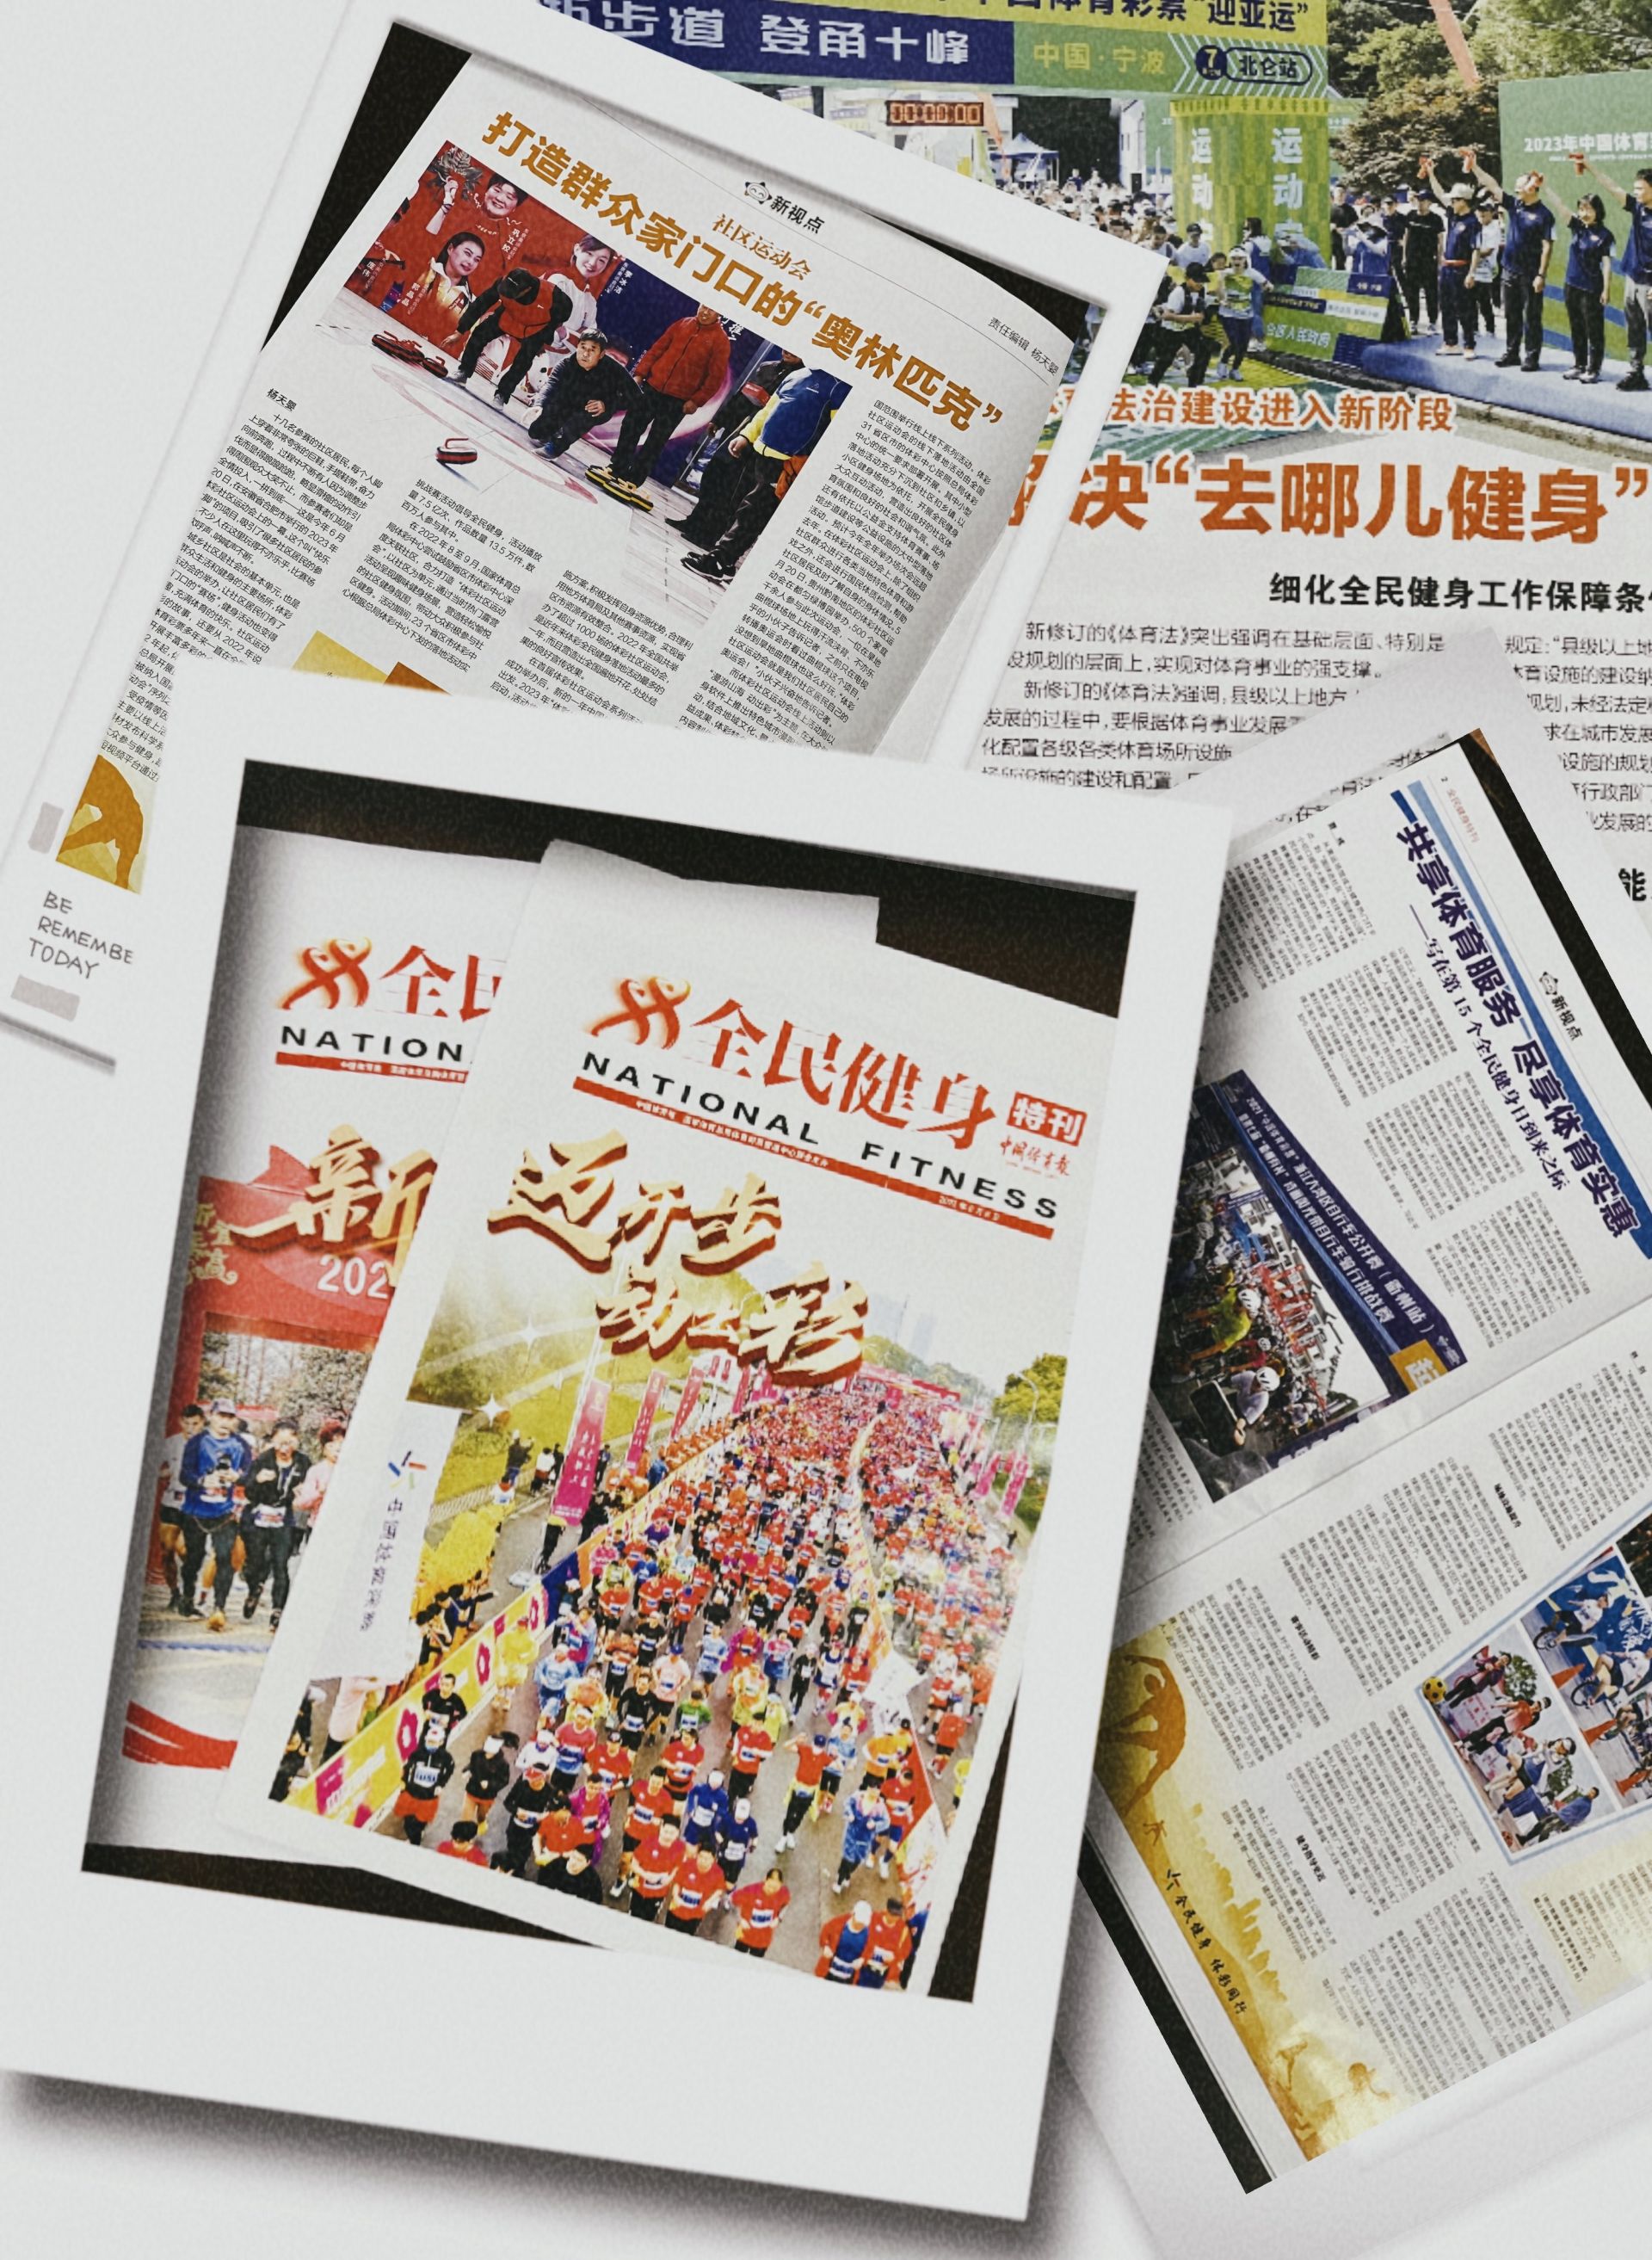 联合中国体育报推出《全民健身特刊》：体彩助力全民健身 点亮幸福生活